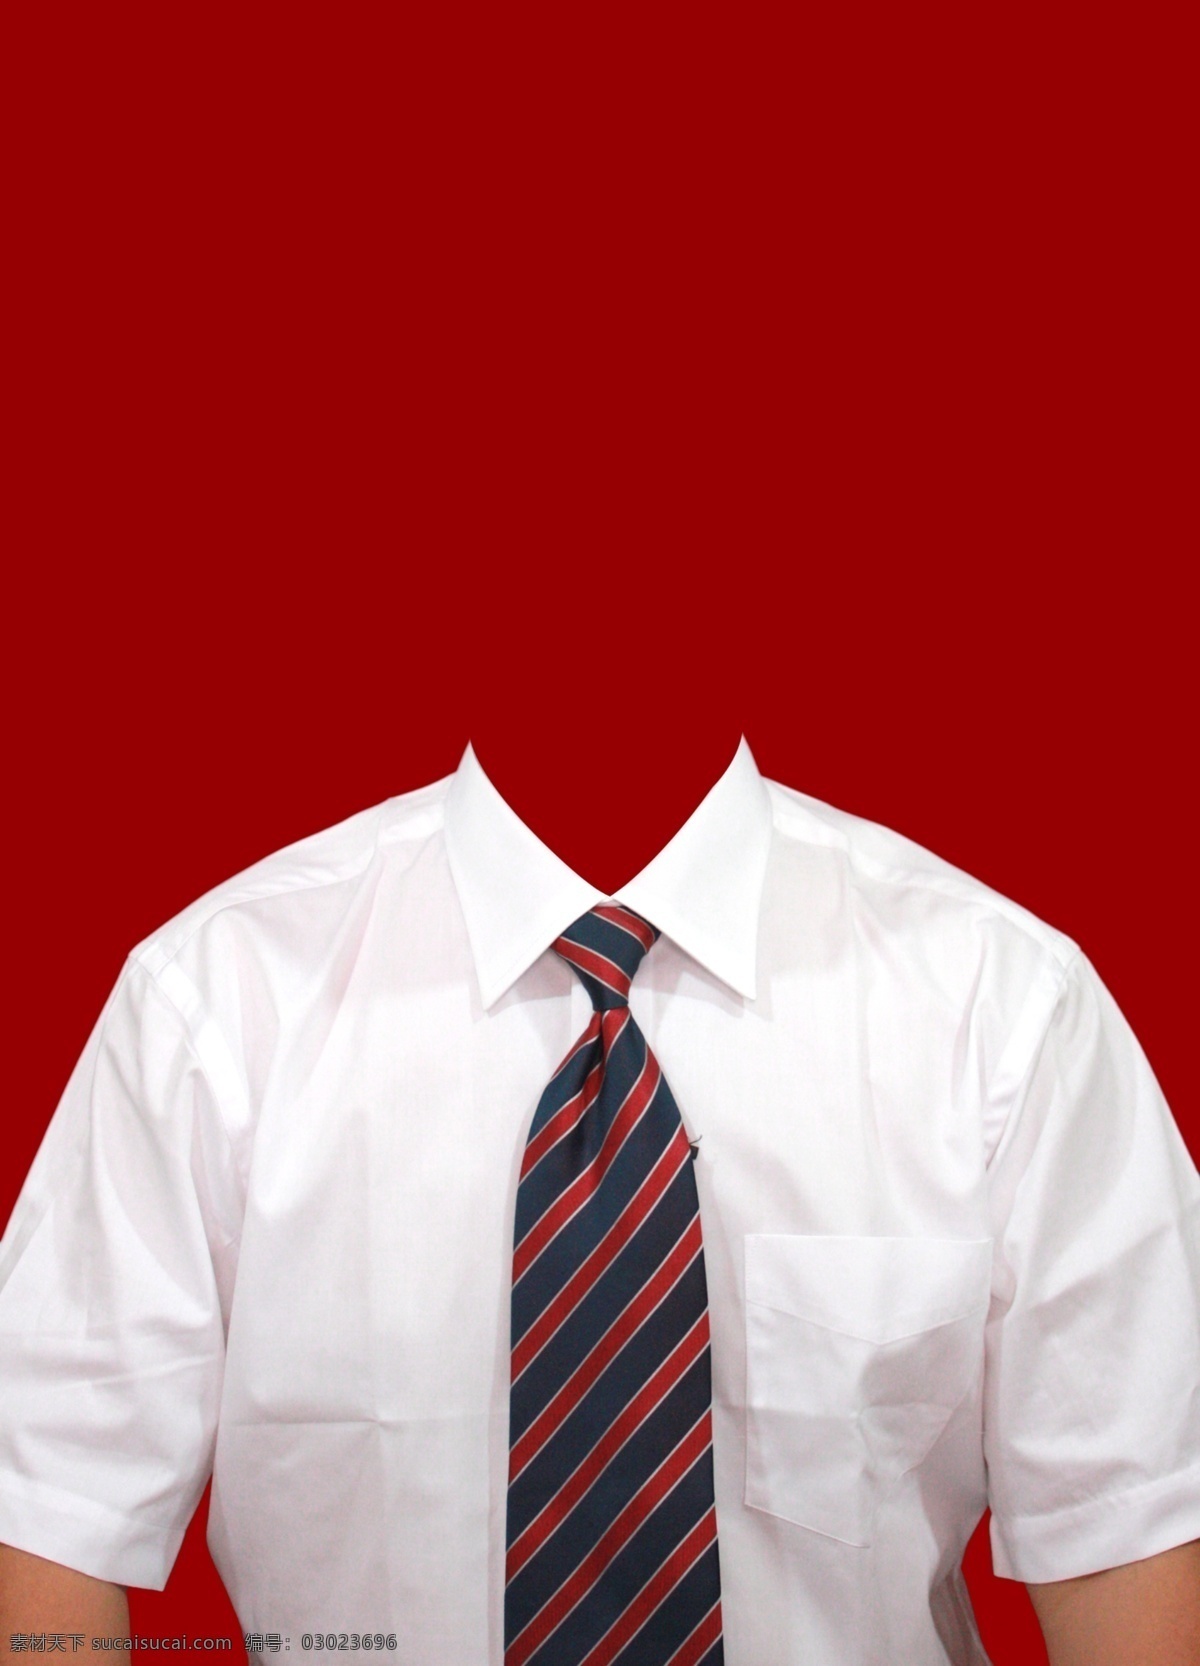 衬衫图片 白衬衫 衣服 衬衣 红领带 衣